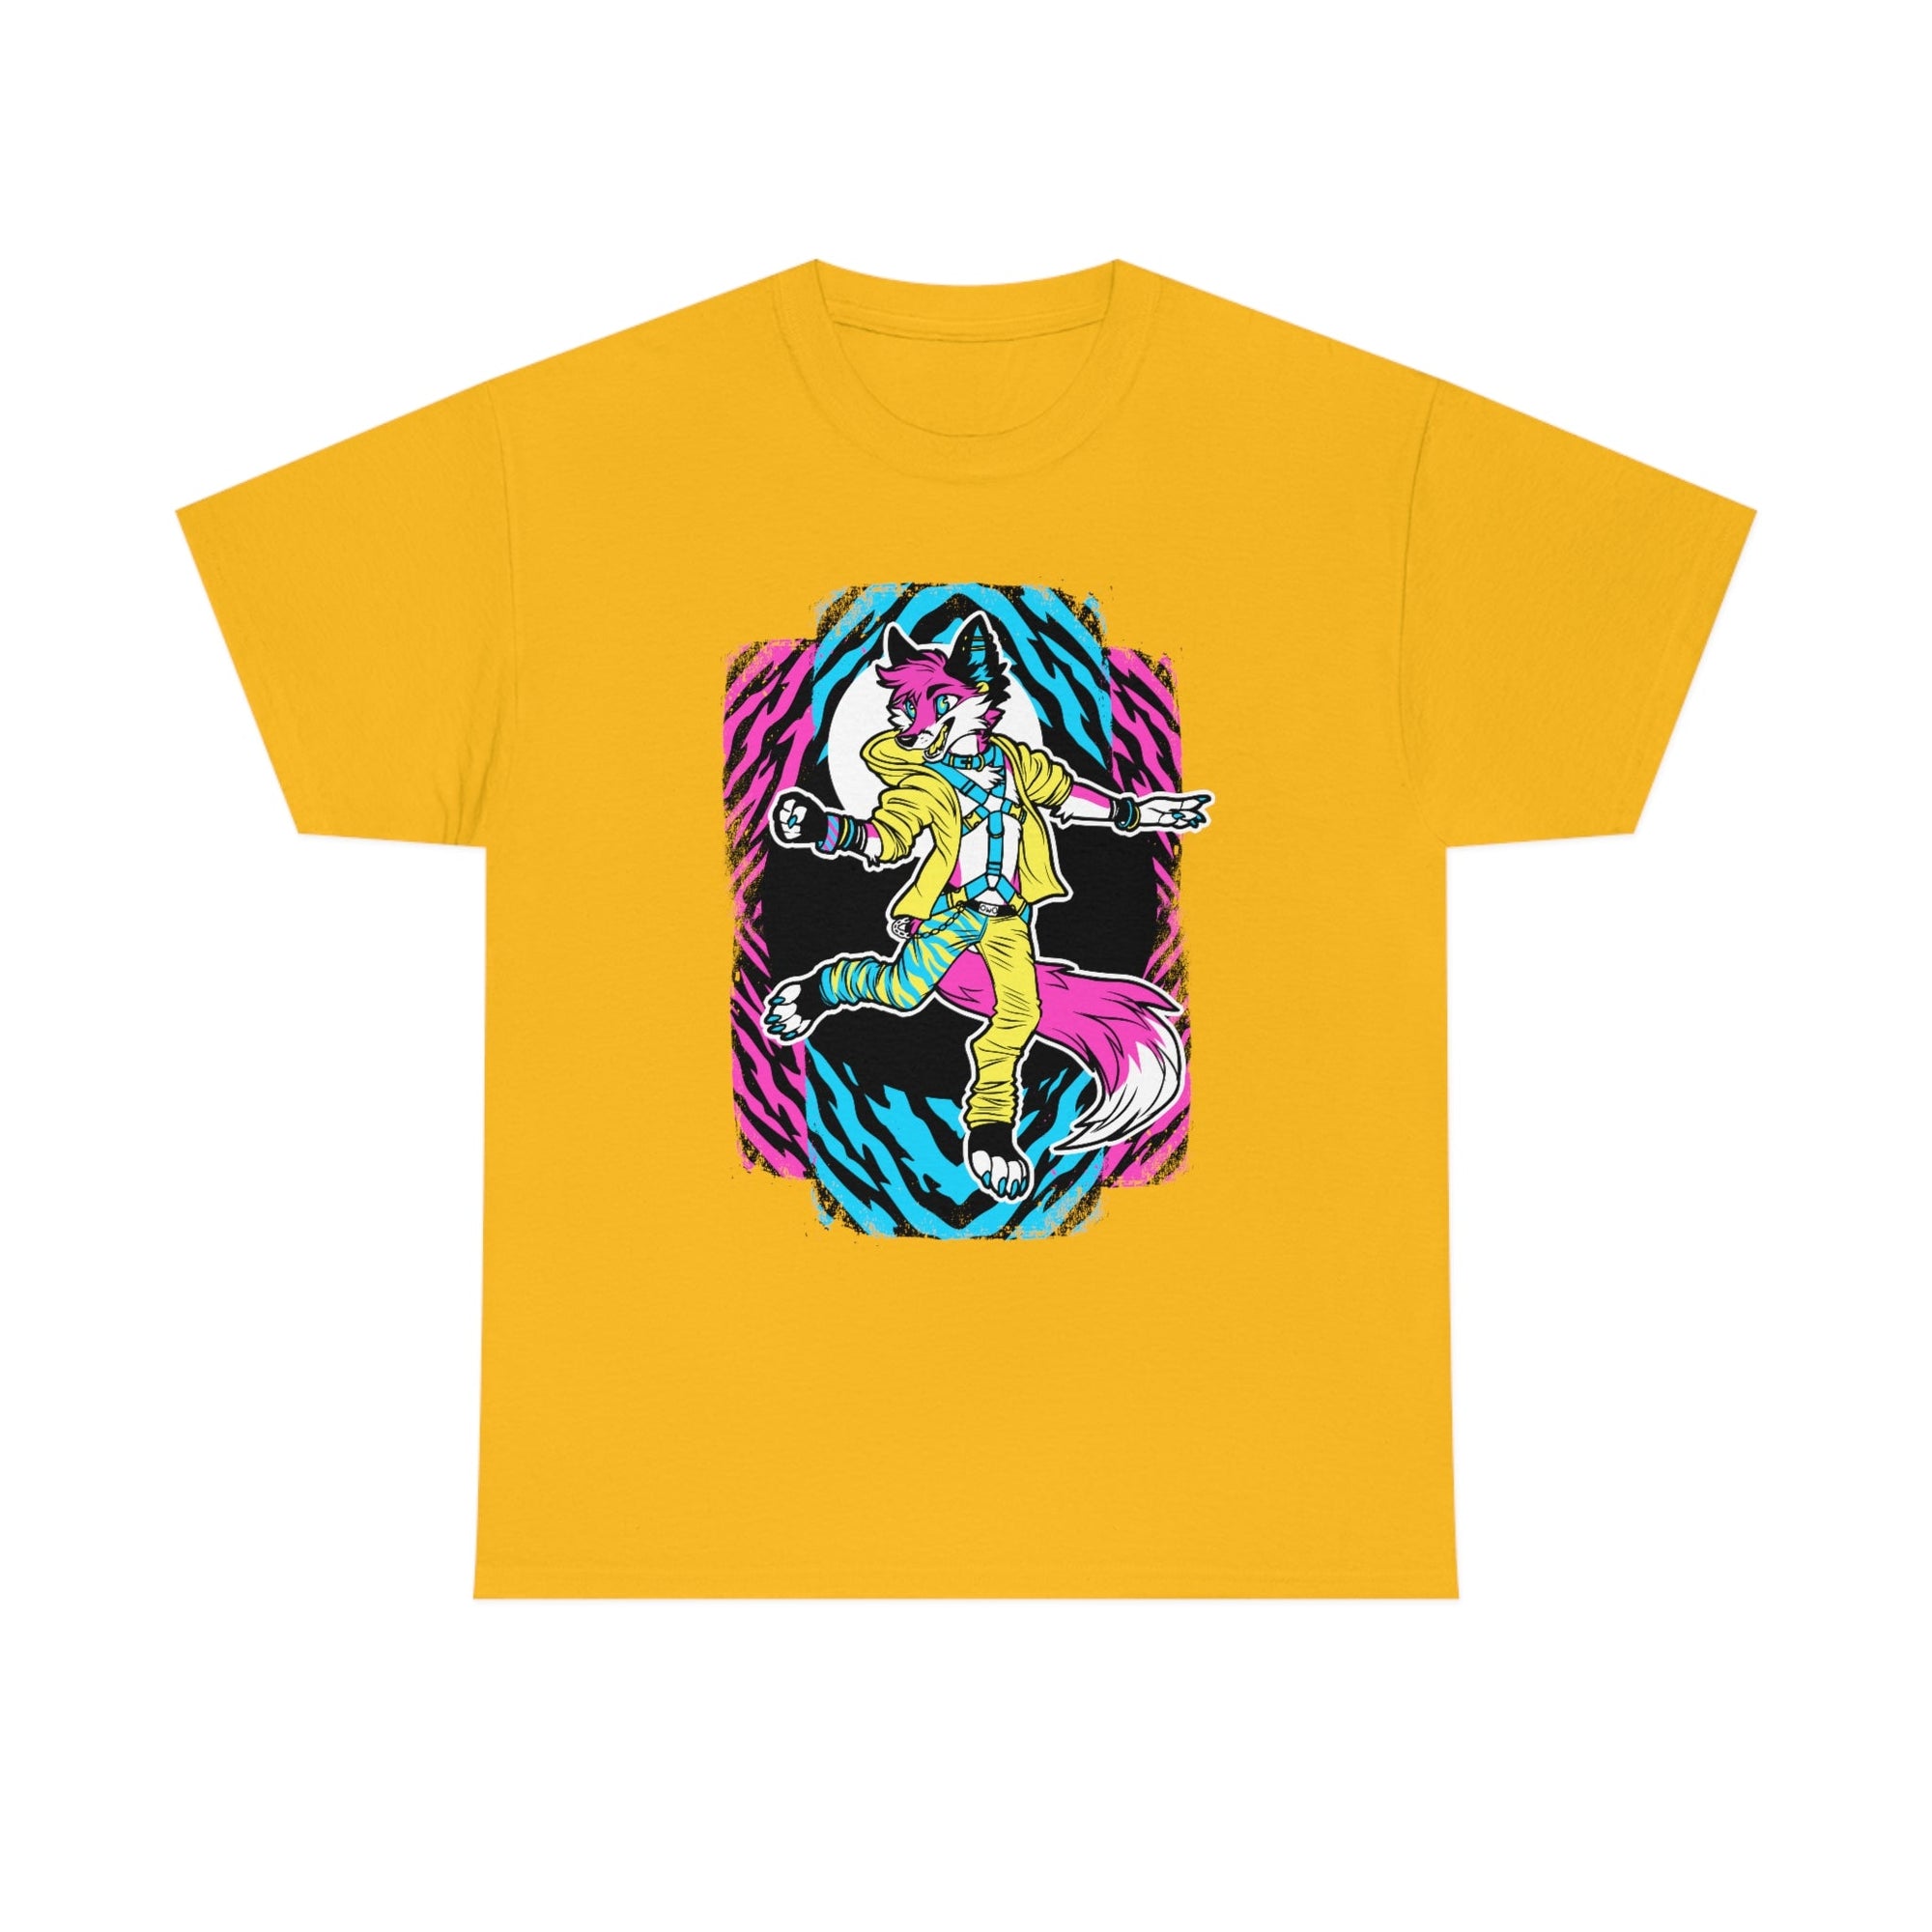 Rave Fox - T-Shirt T-Shirt Artworktee Gold S 